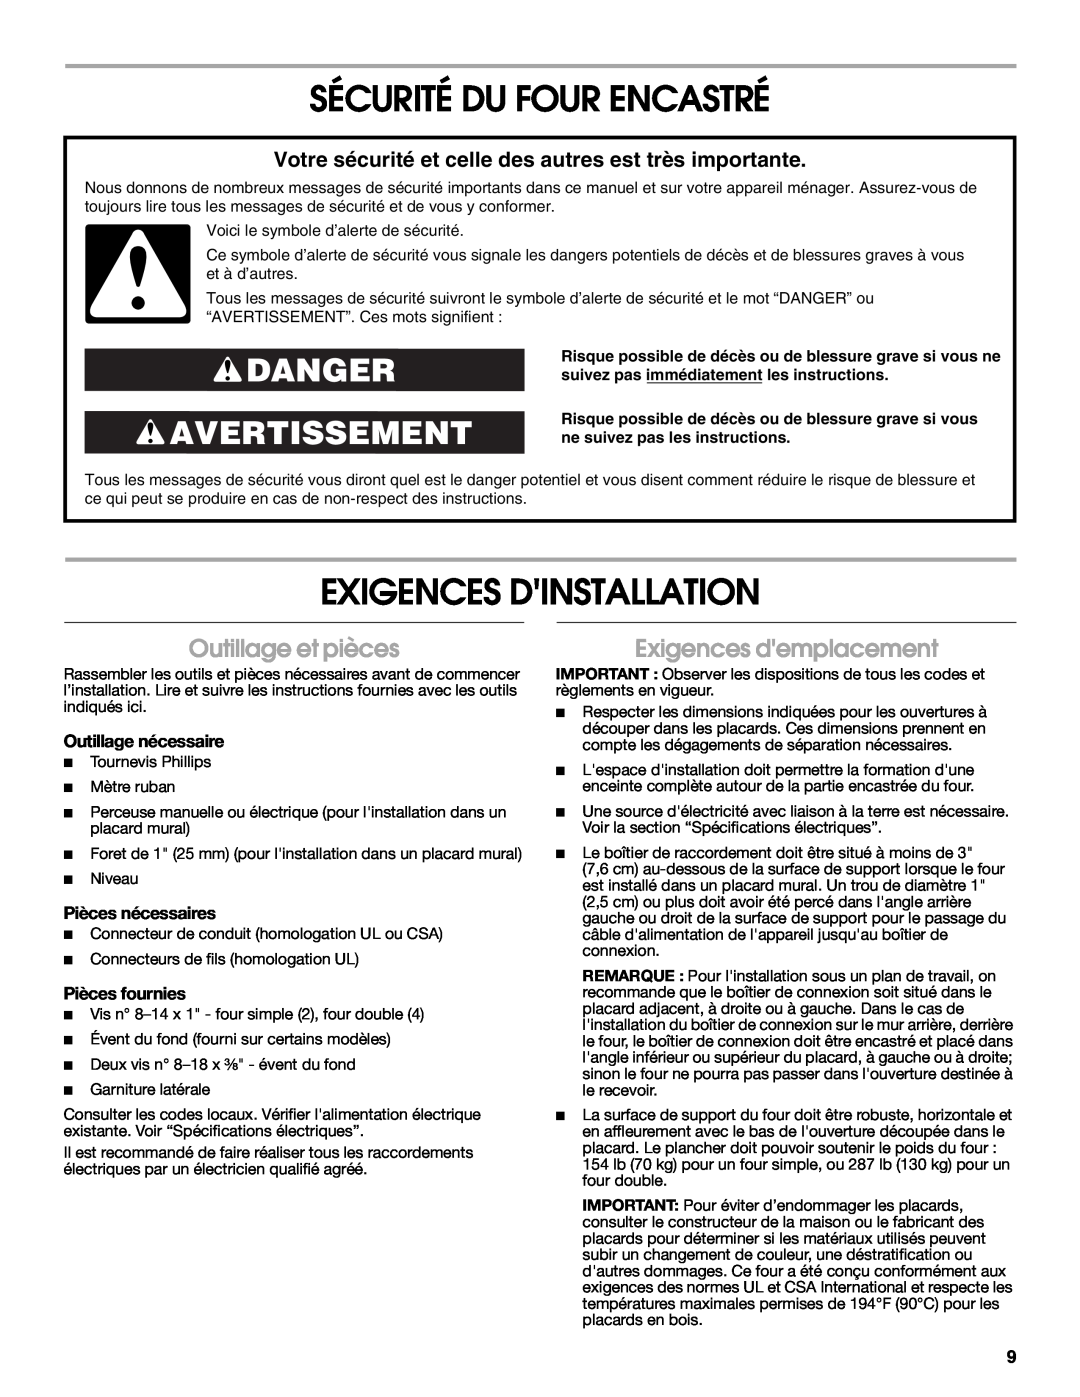 Whirlpool RBS277PV Sécurité Du Four Encastré, Exigences Dinstallation, Danger Avertissement, Outillage et pièces 